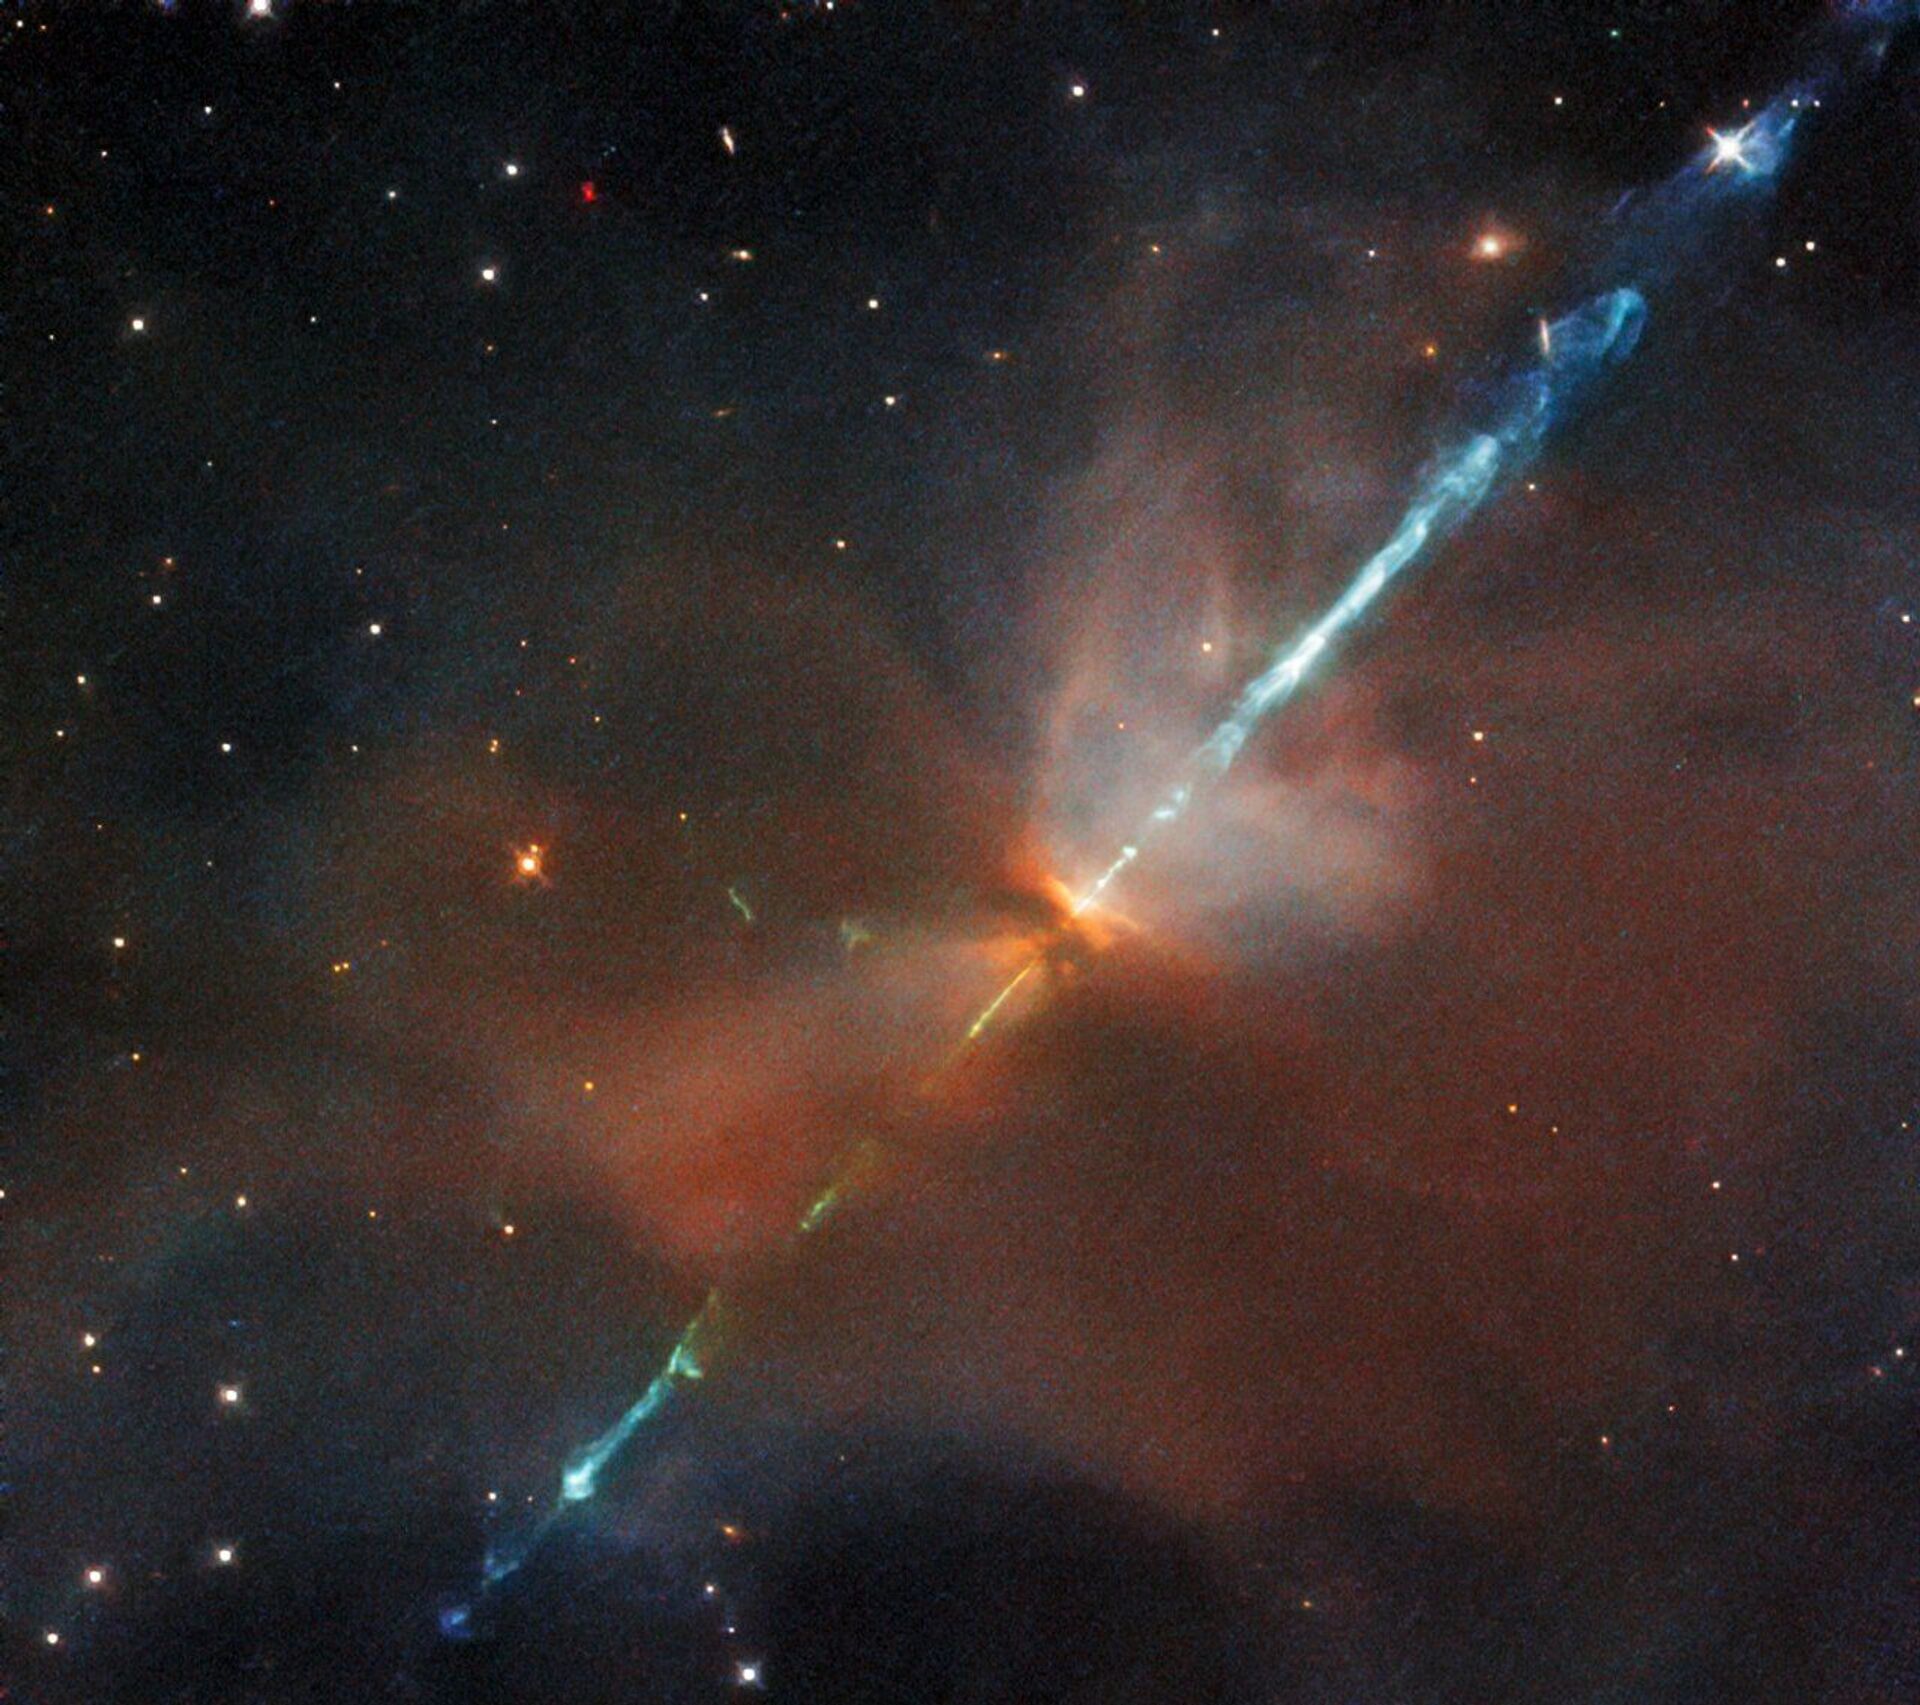 Hubble registra IMAGEM de fenômeno astronômico raro na constelação de Orion - Sputnik Brasil, 1920, 30.08.2021